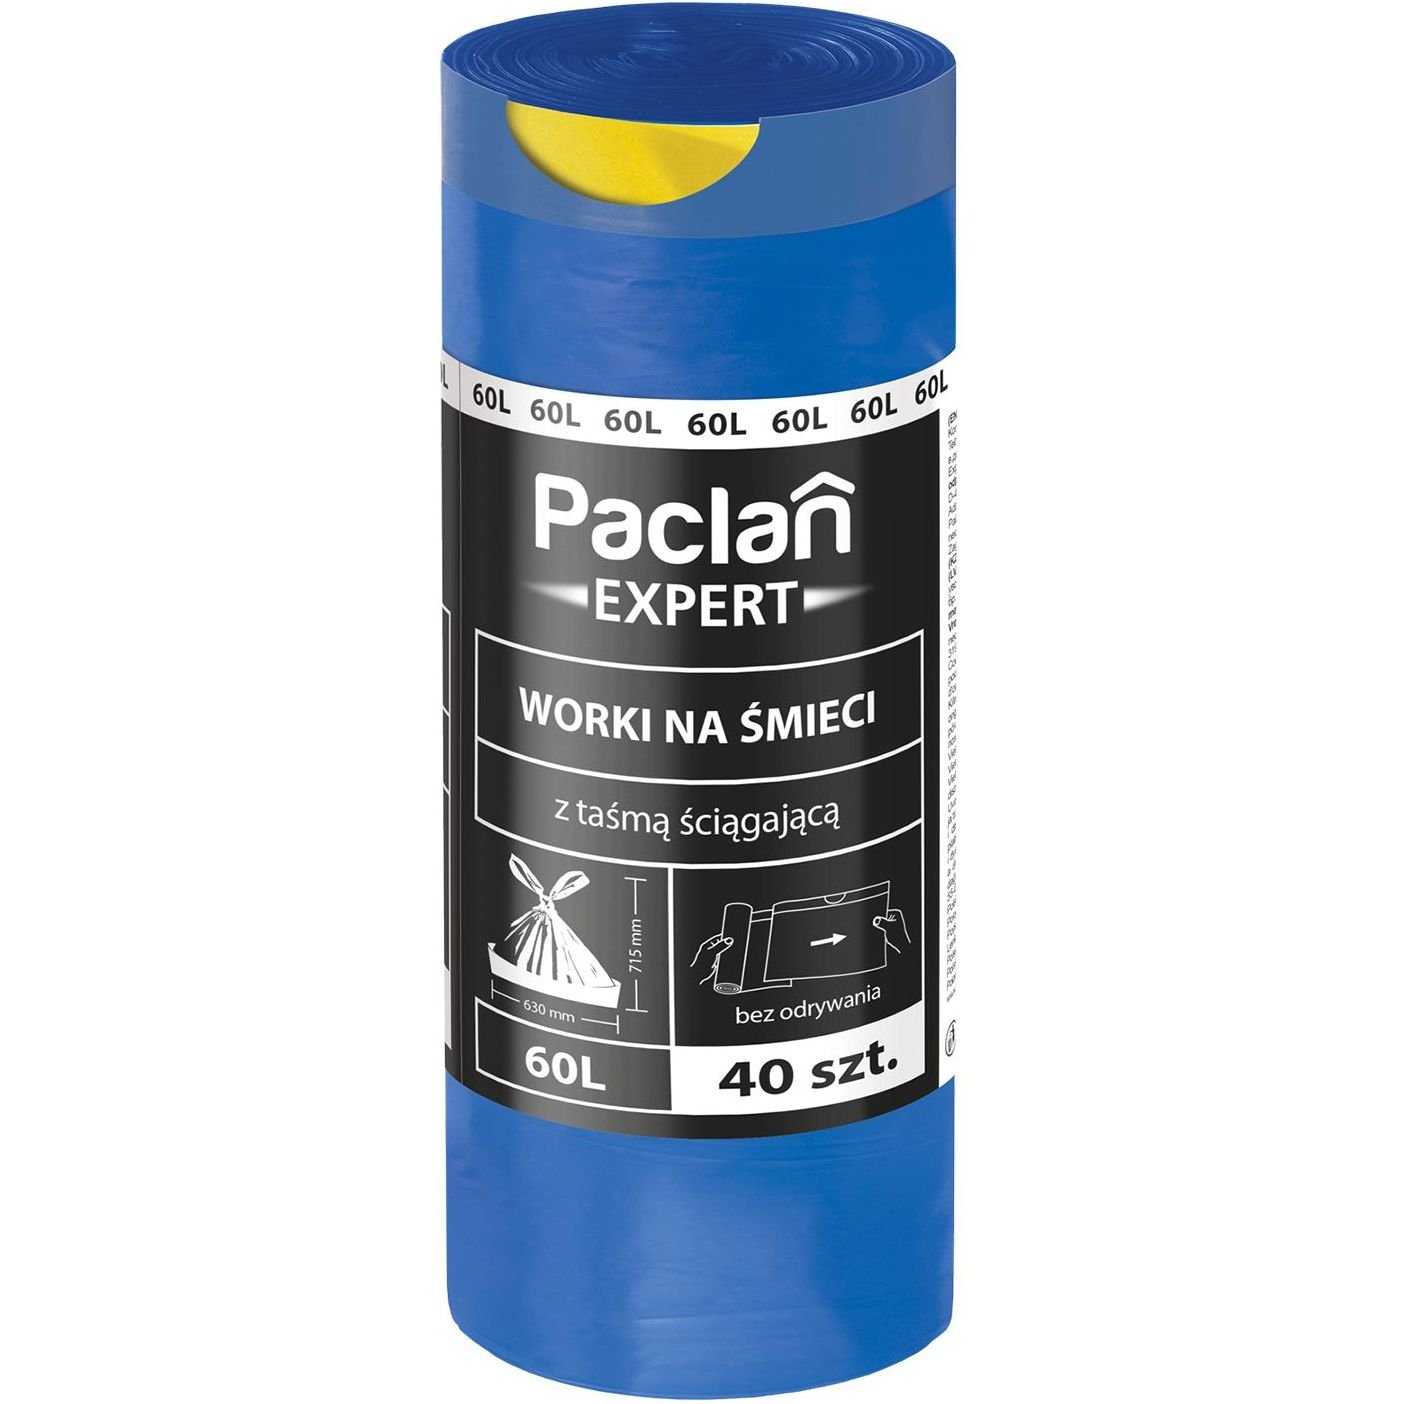 Пакети для сміття Paclan Expert, 60 л, 40 шт. - фото 1